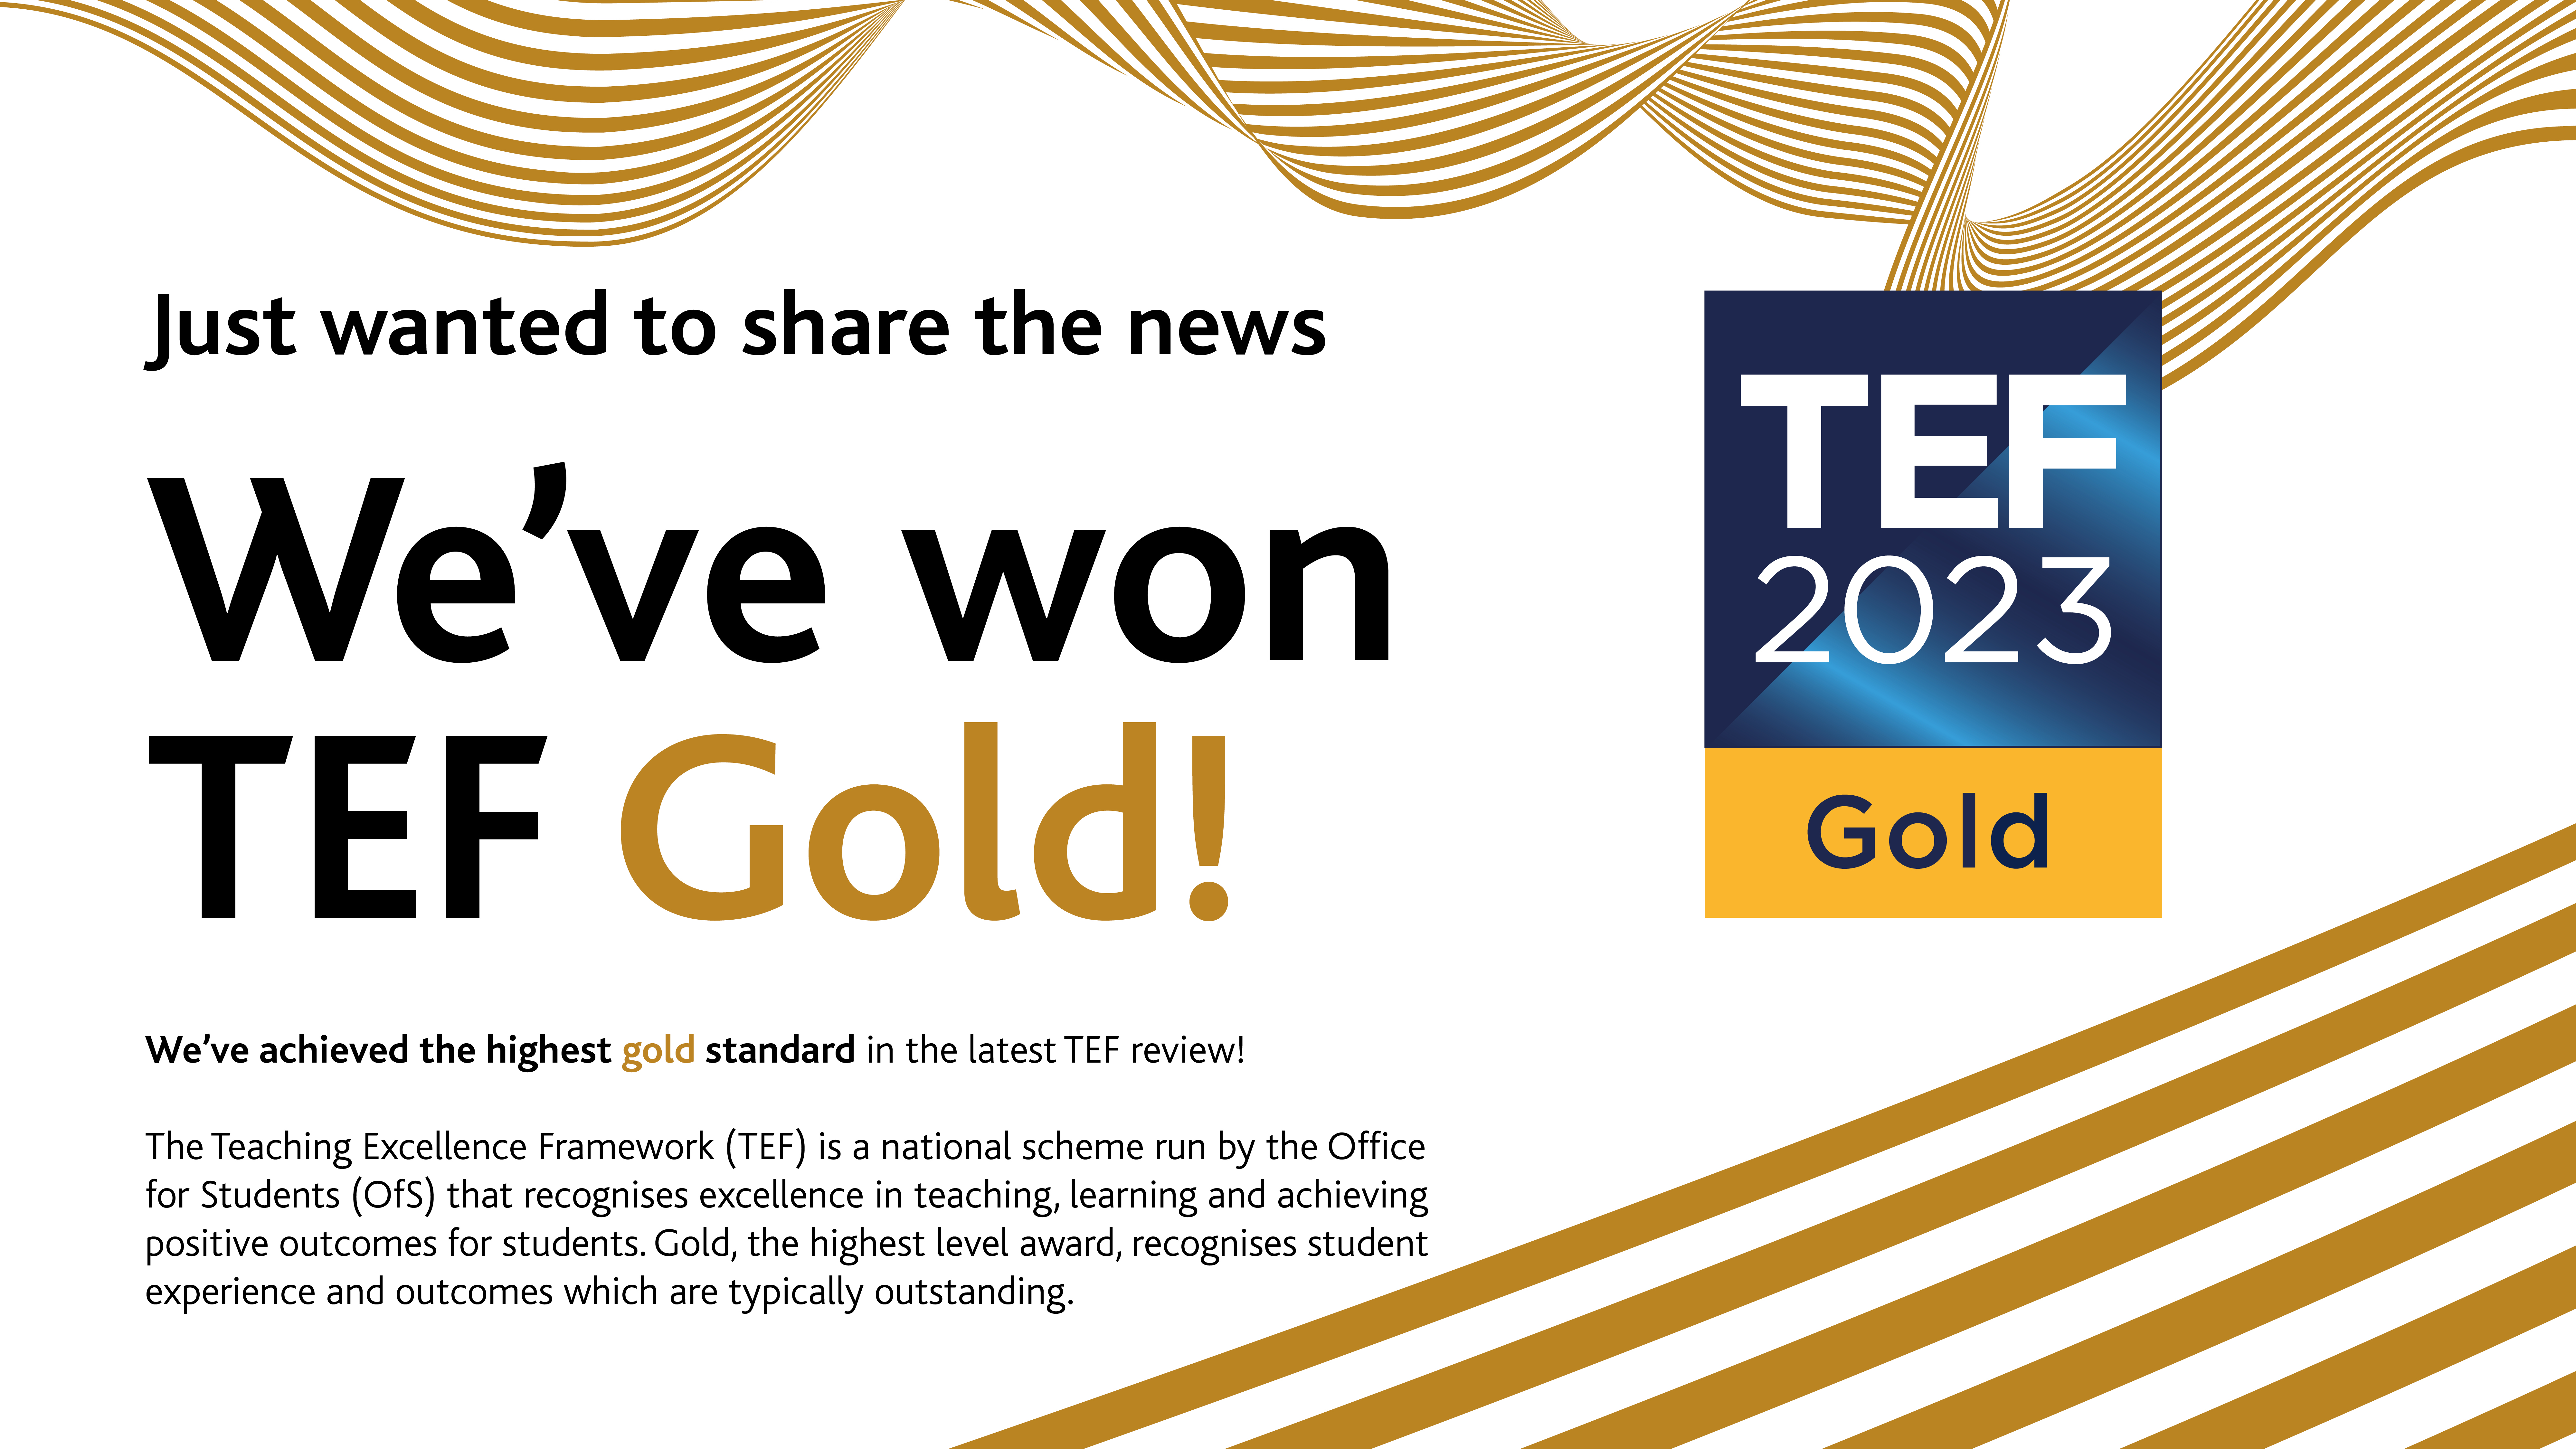 We've won TEF Gold slide